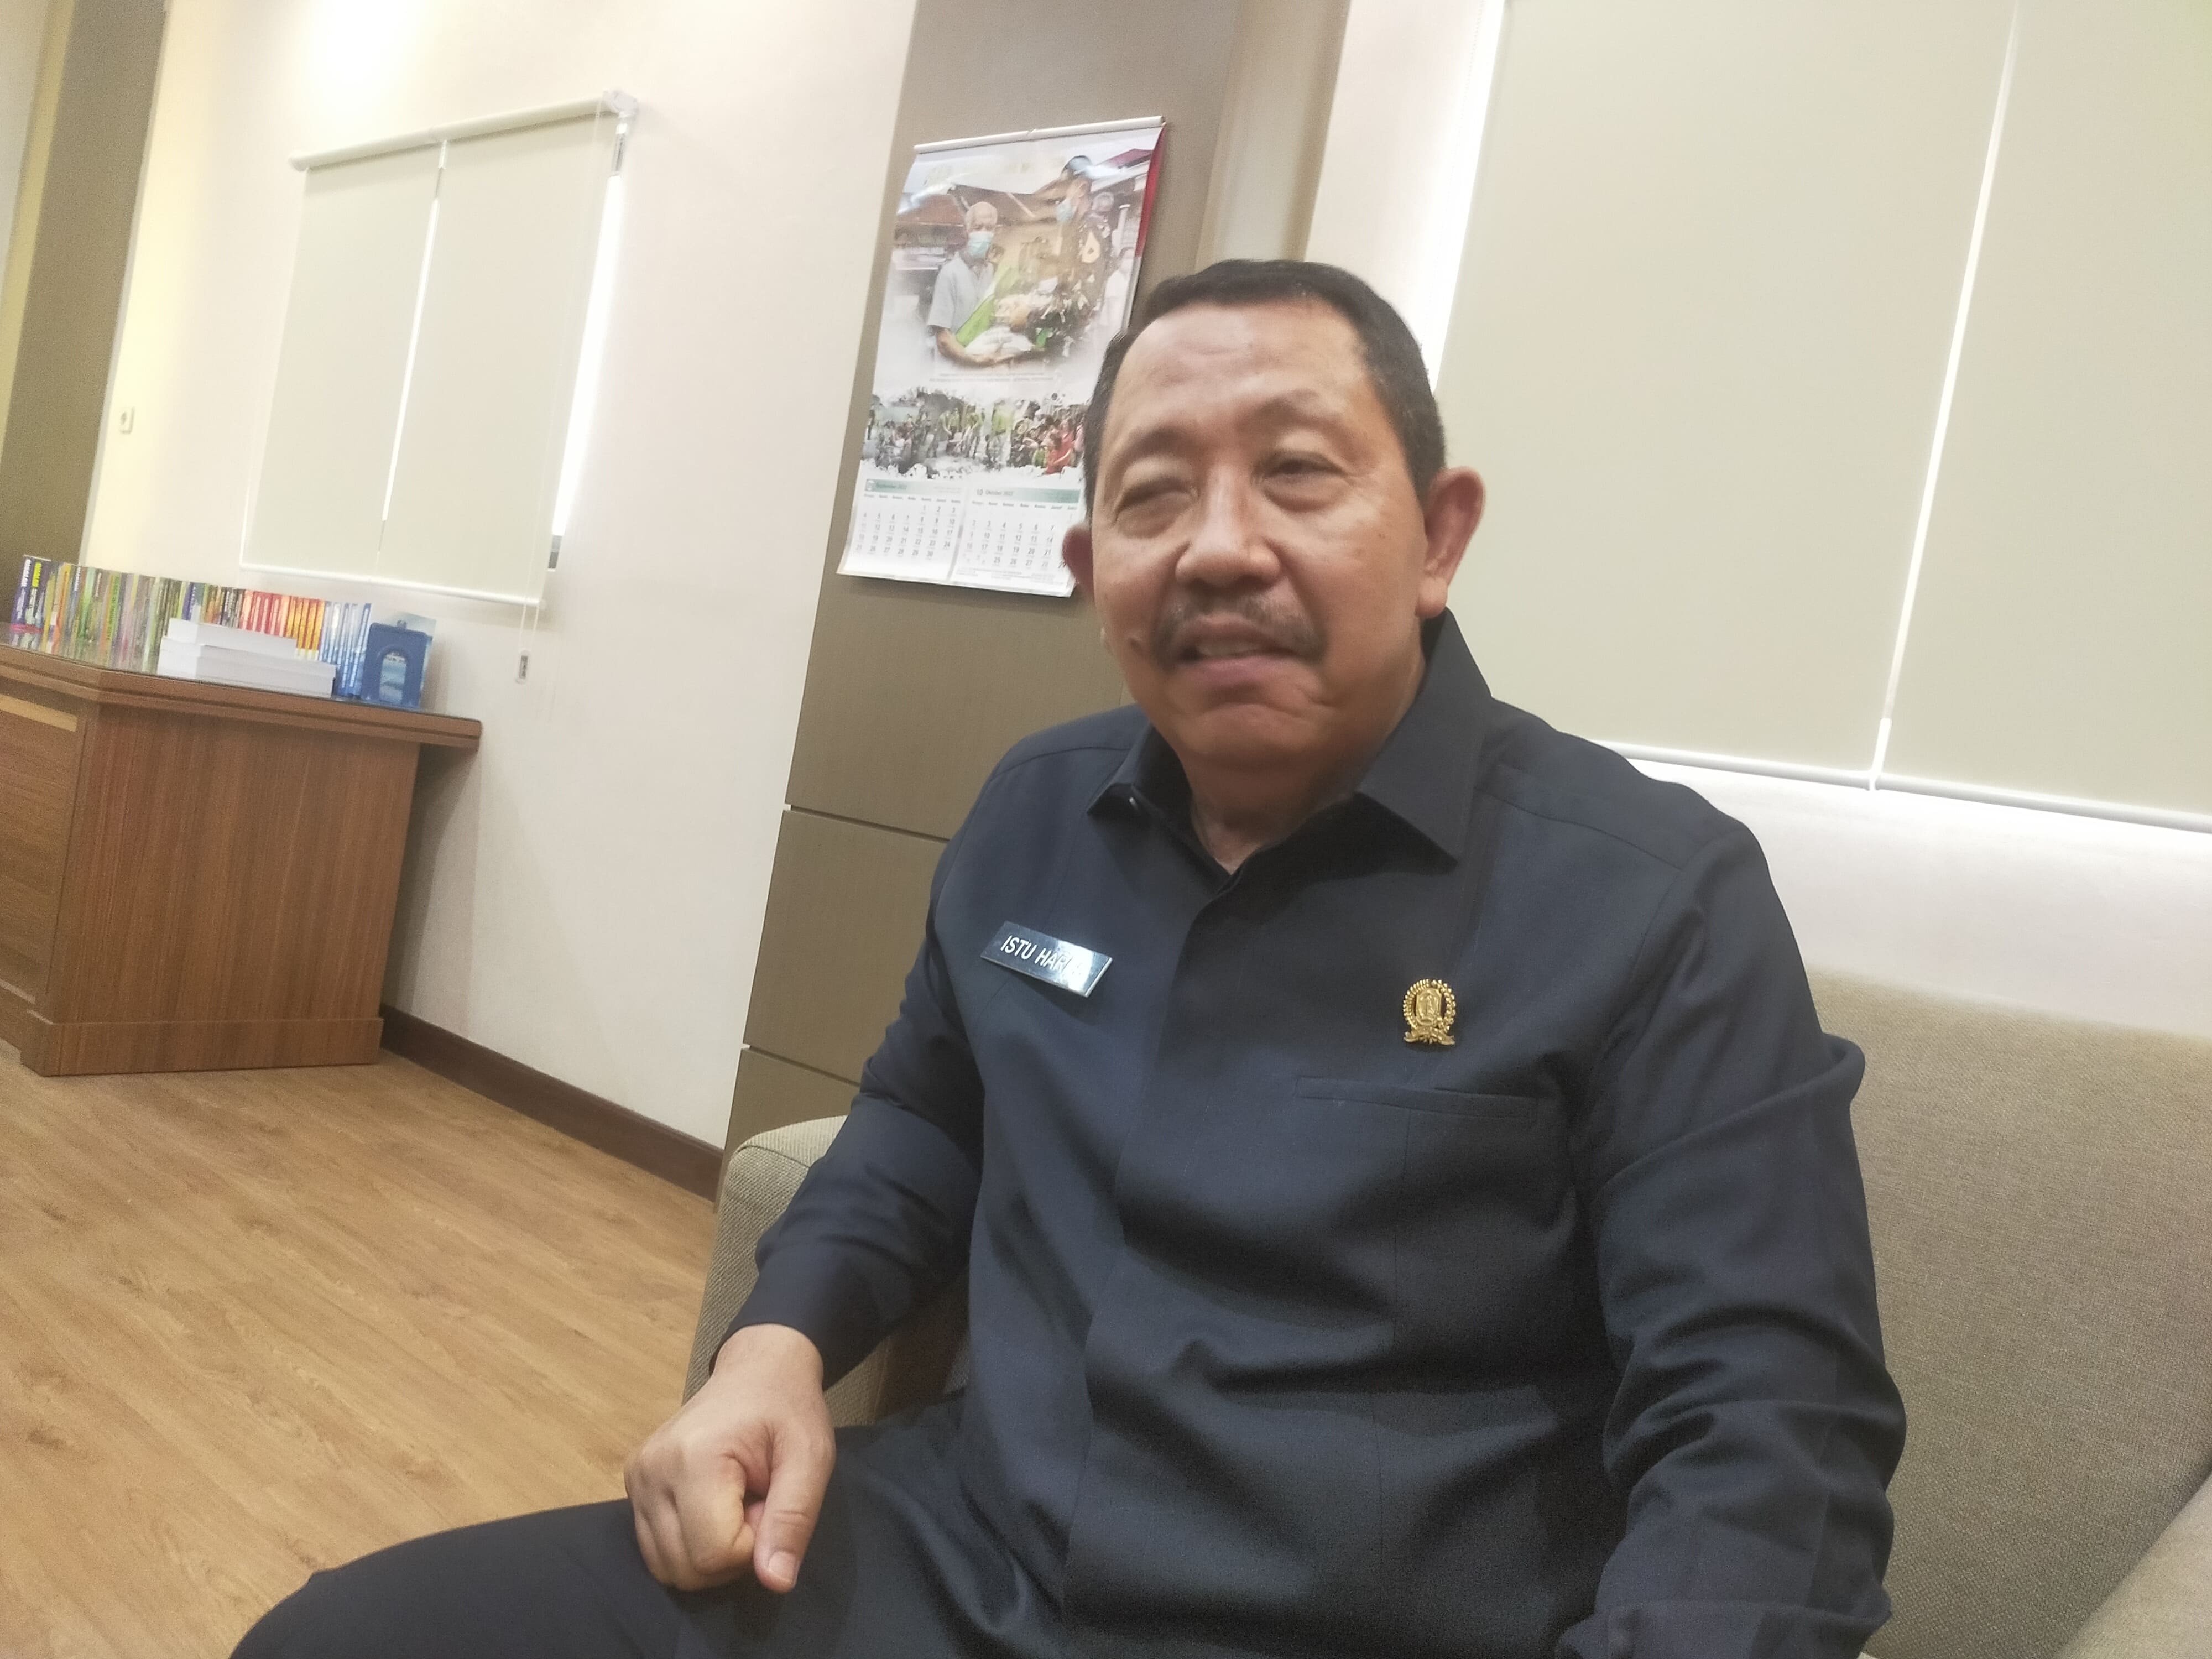 Anggota Pansus LKPJ Gubernur DPRD Jawa
Timur Mayjen TNI (Purn) Istu Hari Subagyo